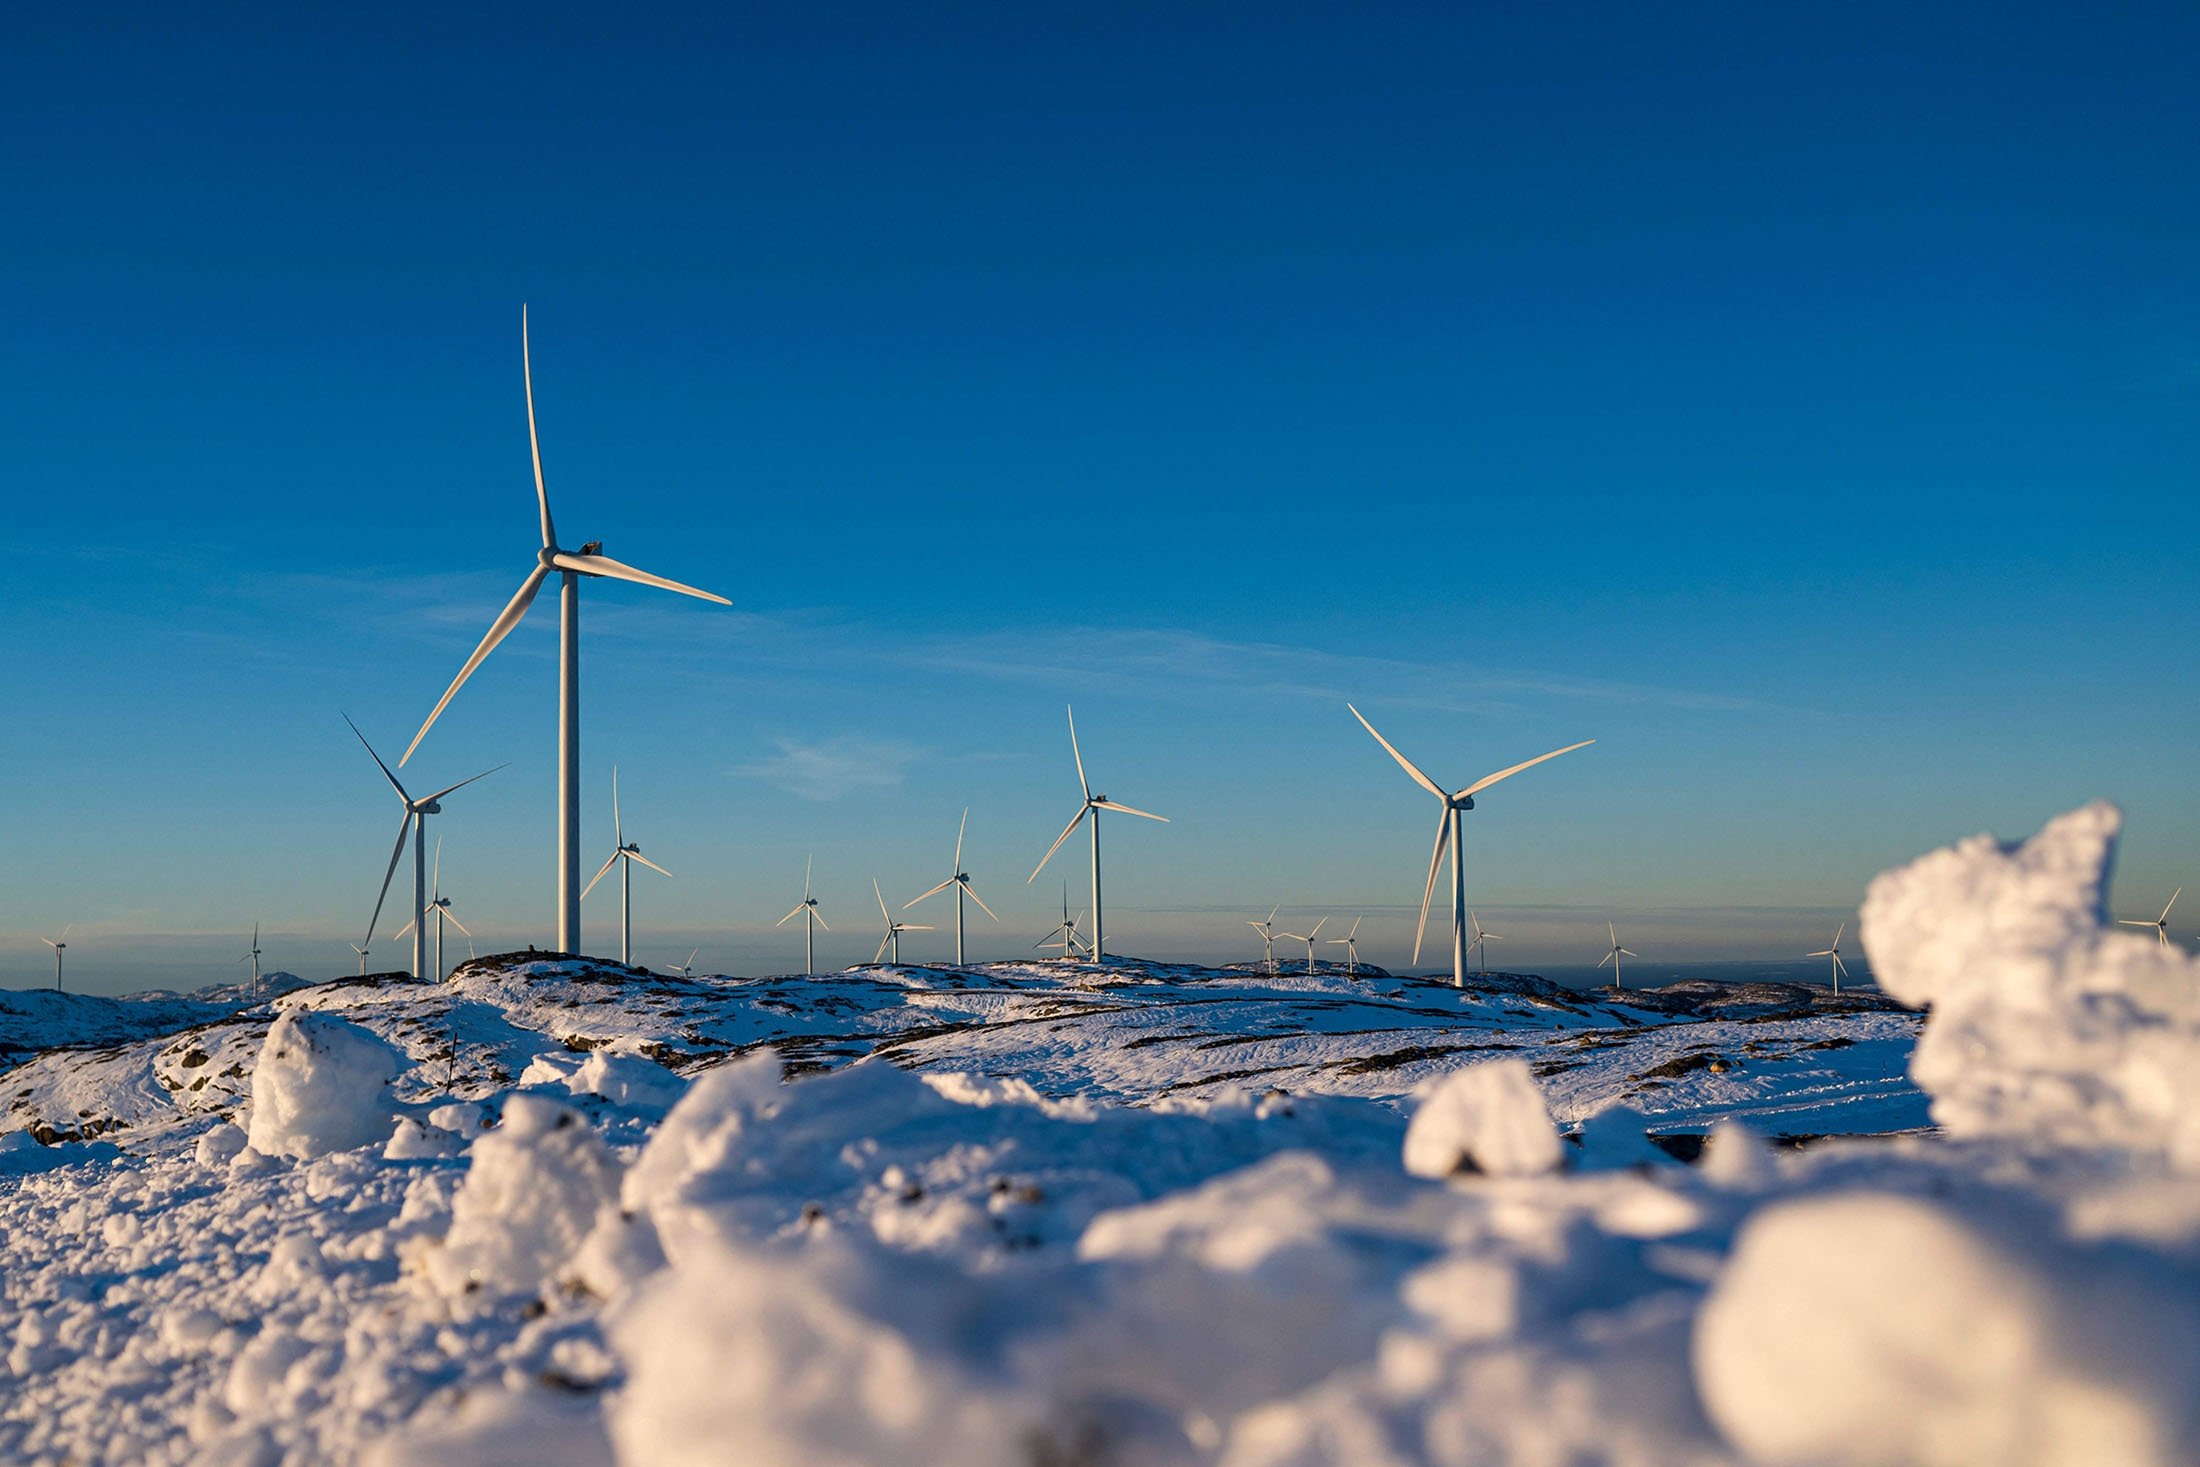 Éoliennes du parc éolien de Storheia, l'un des plus grands parcs éoliens terrestres d'Europe, dans la municipalité d'Afjord, en Norvège, le 7 décembre 2021. (Photo AFP)